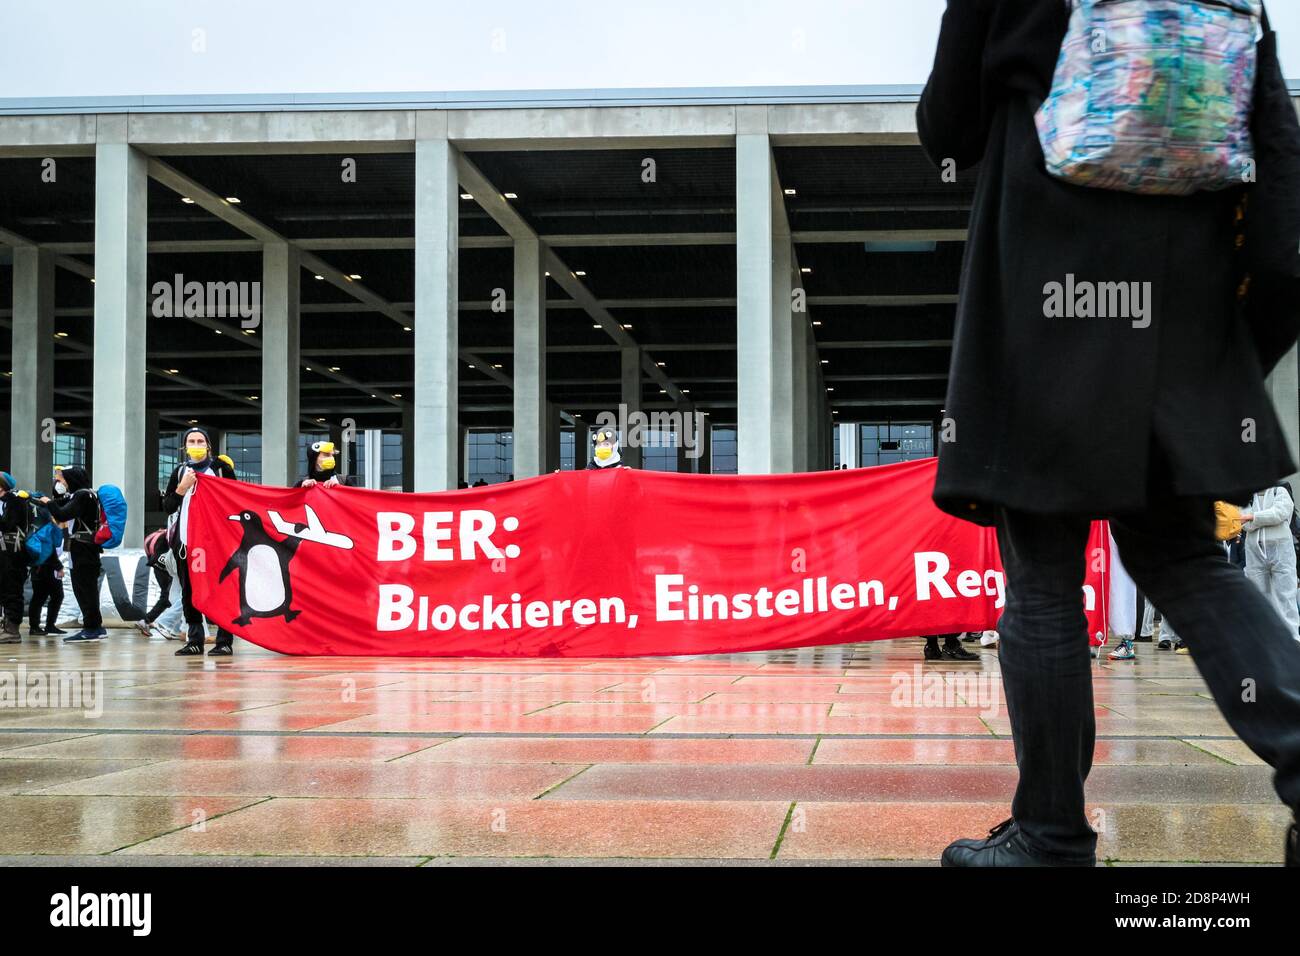 Il cartello "BER: Blockieren, einstellen, Recyclen", in quanto attivisti del clima, protesta contro l'apertura del nuovo aeroporto di Berlino-Brandeburgo (BER). Foto Stock